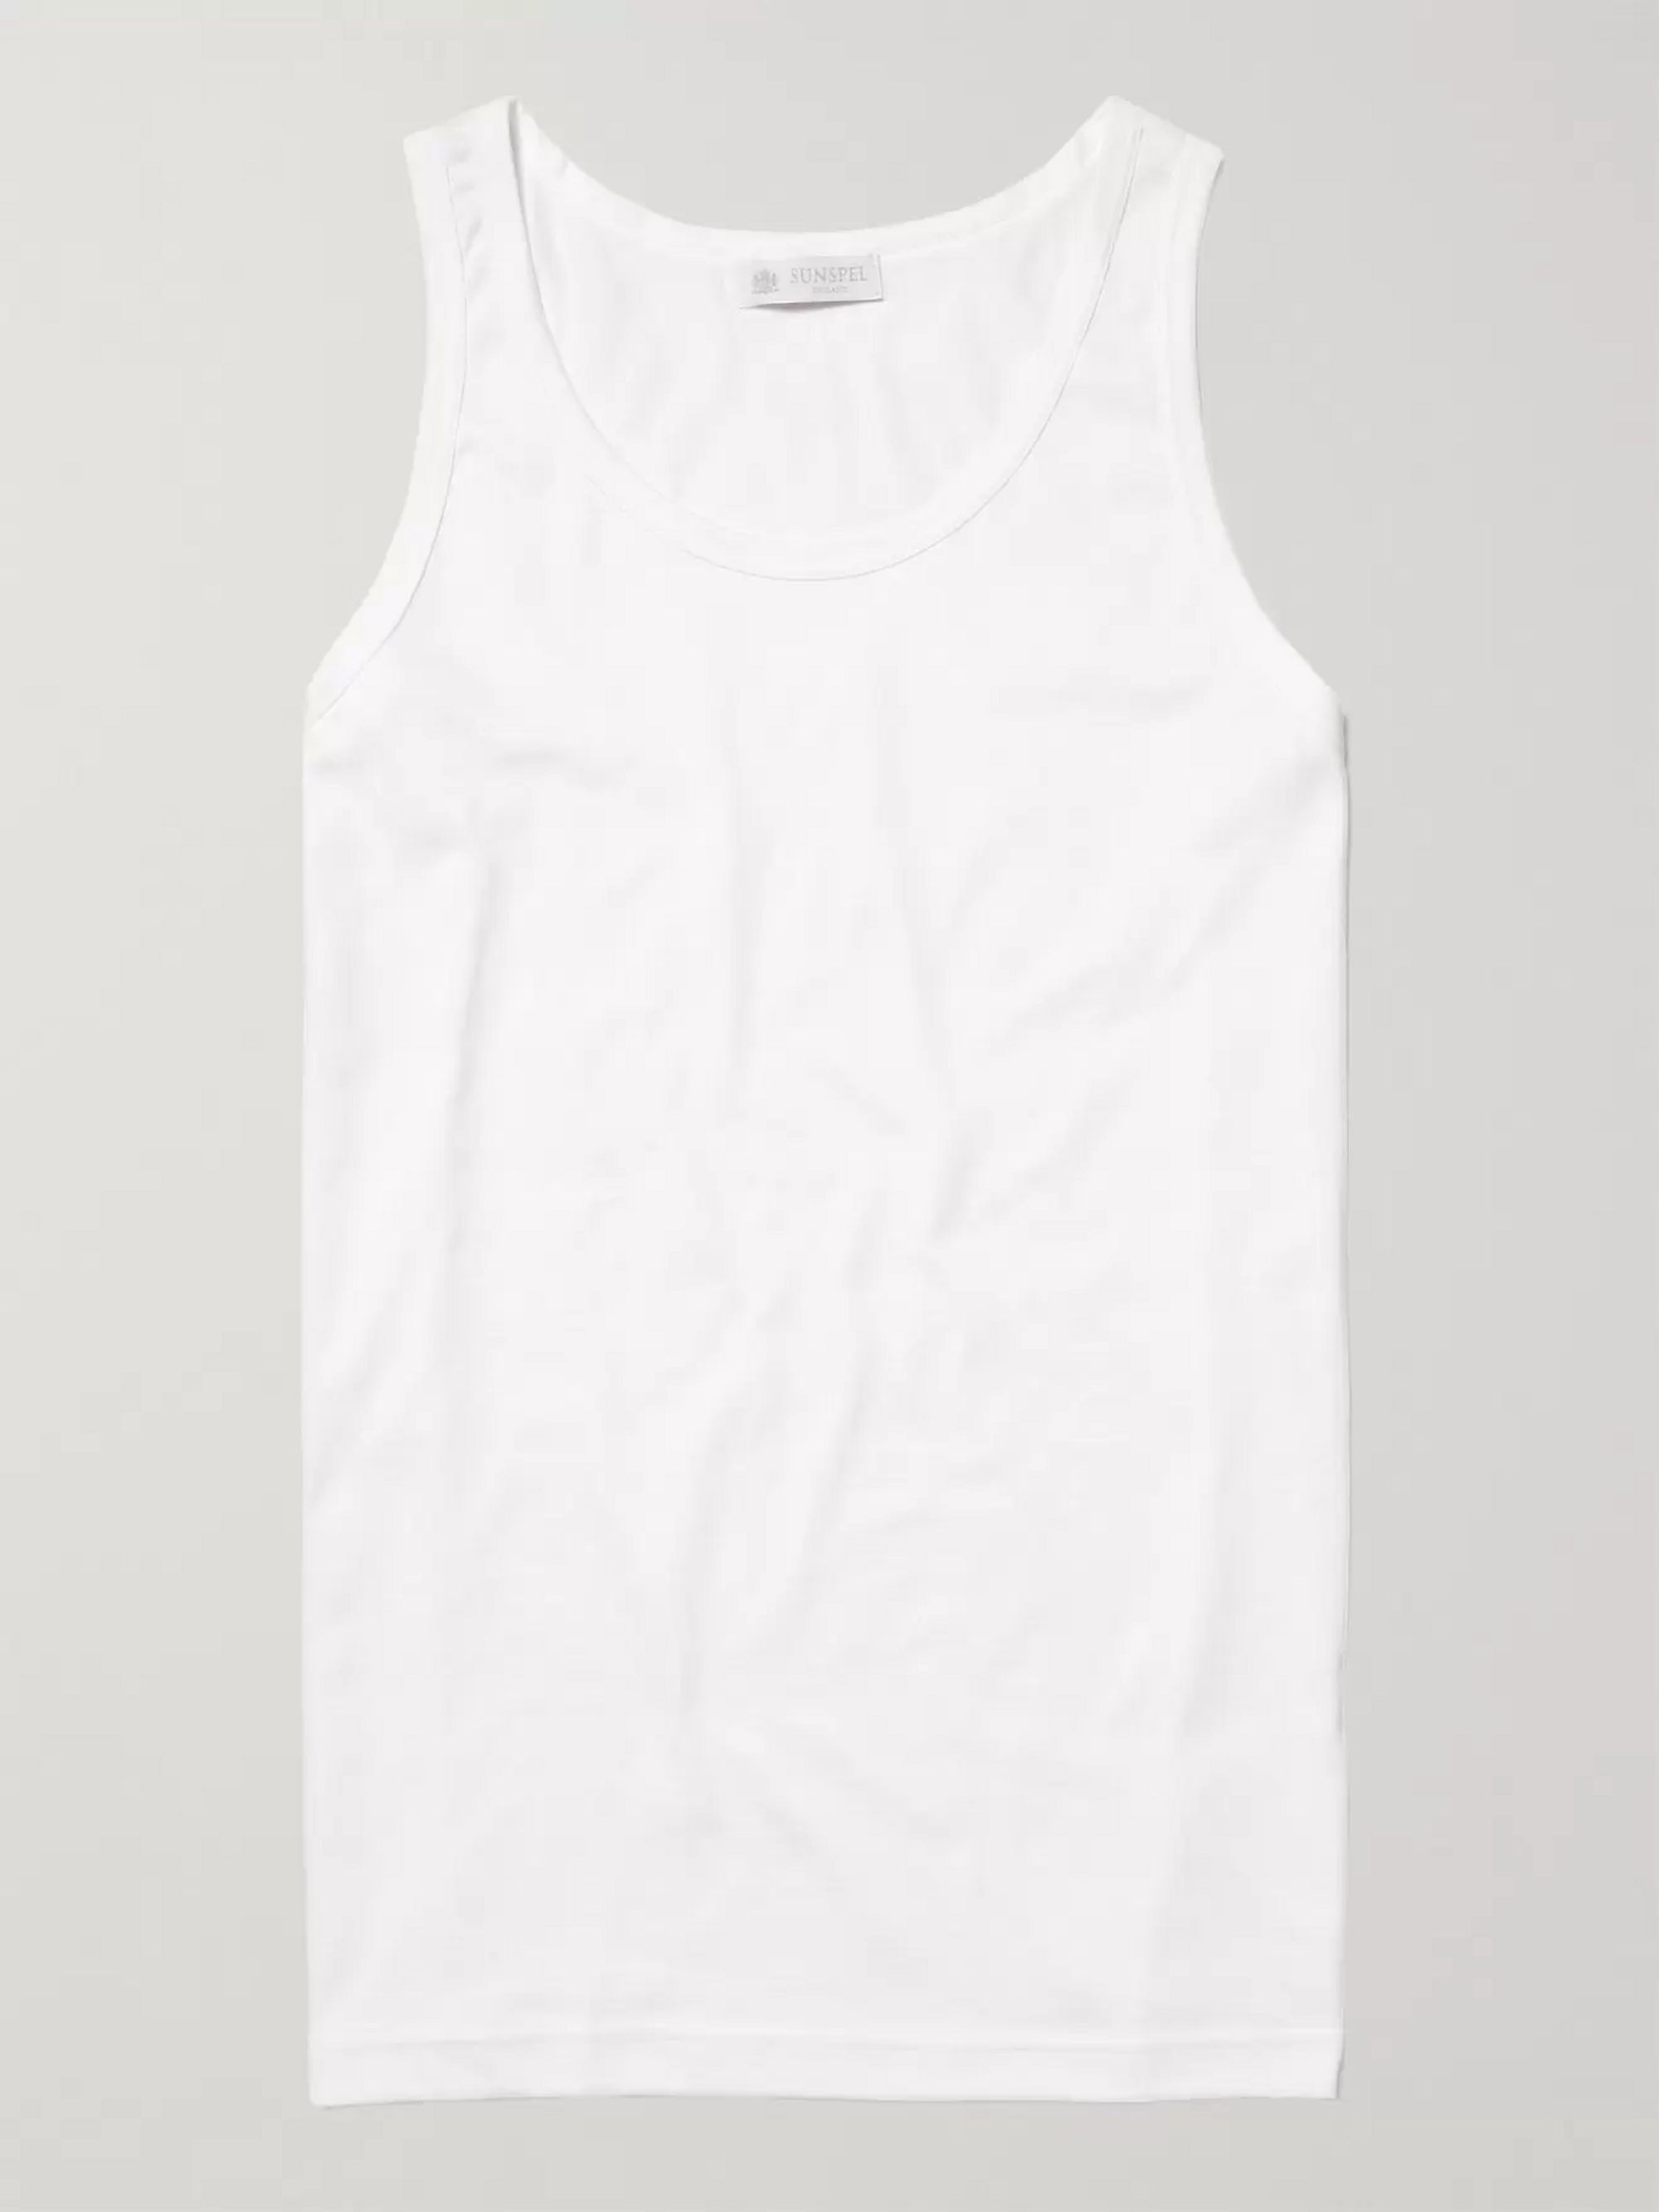 Super White Cotton Underwear Tank Top | Sunspel | MR PORTER JP-97